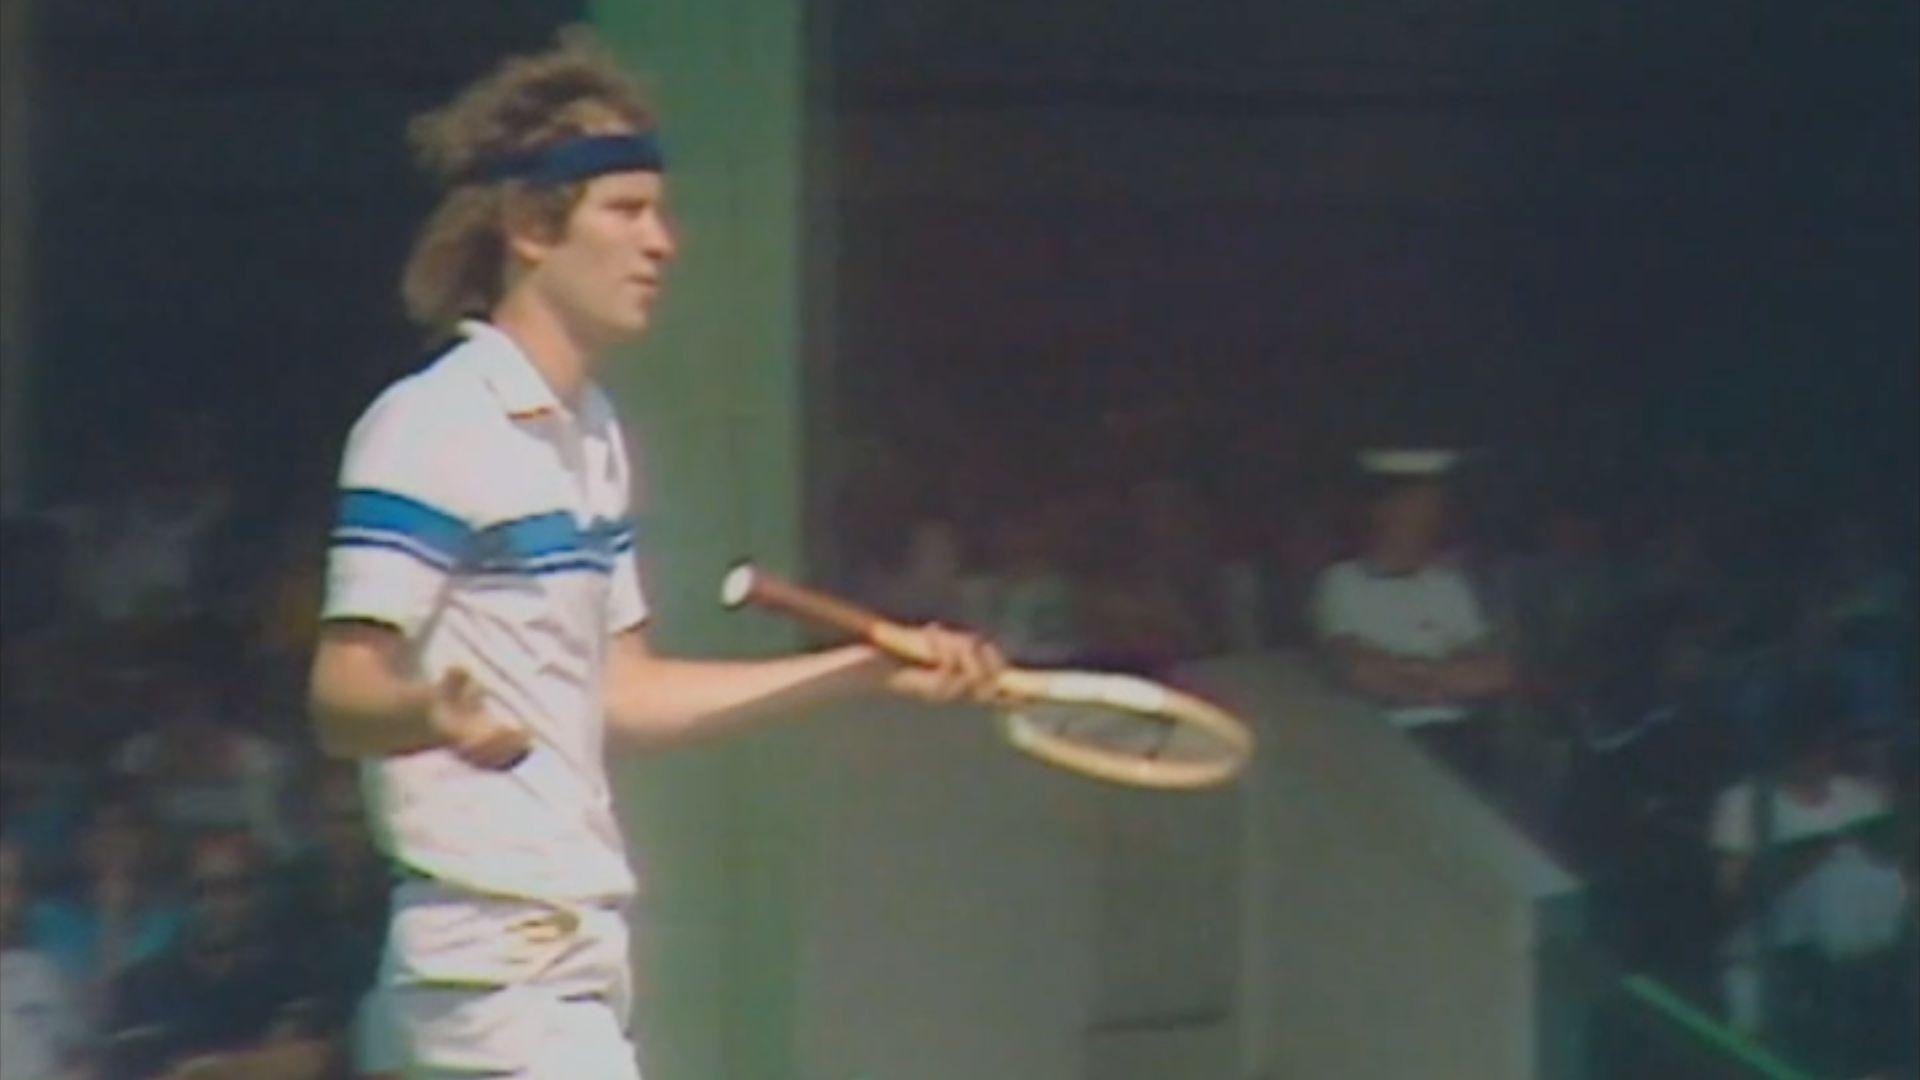 Gods of Tennis: Called"Out" - John McEnroe